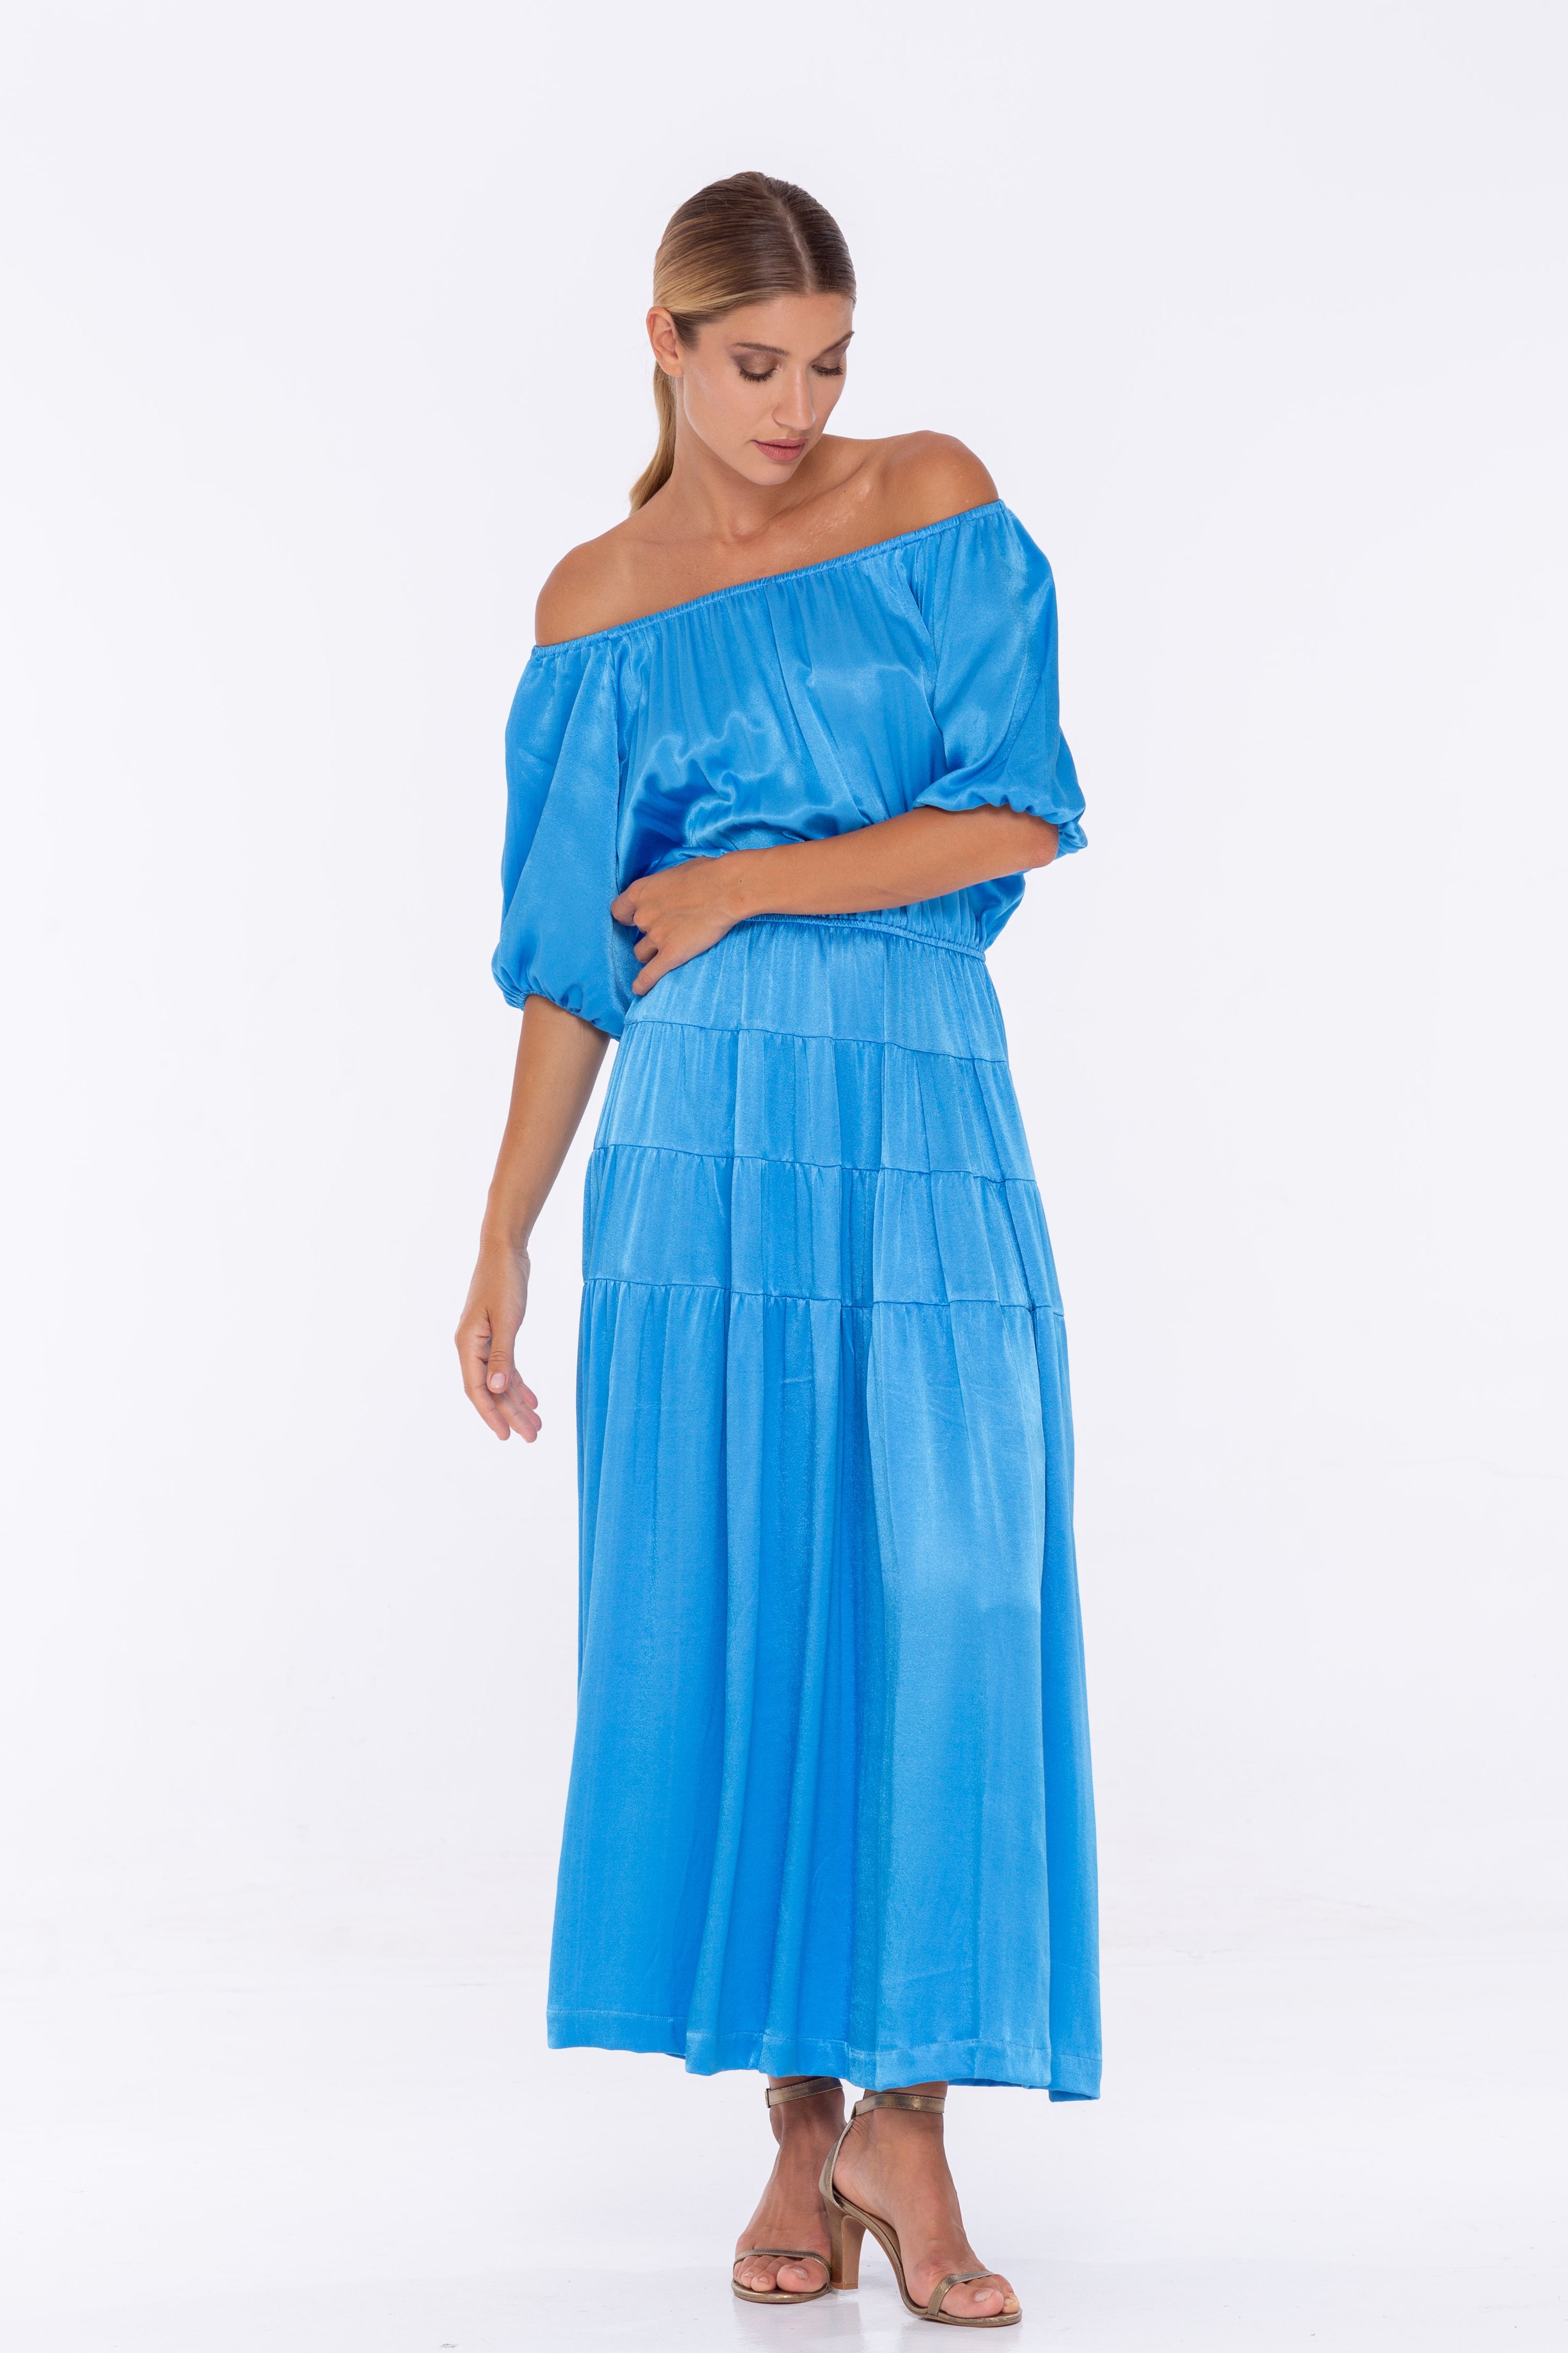 Coco Dress - Miami Blue